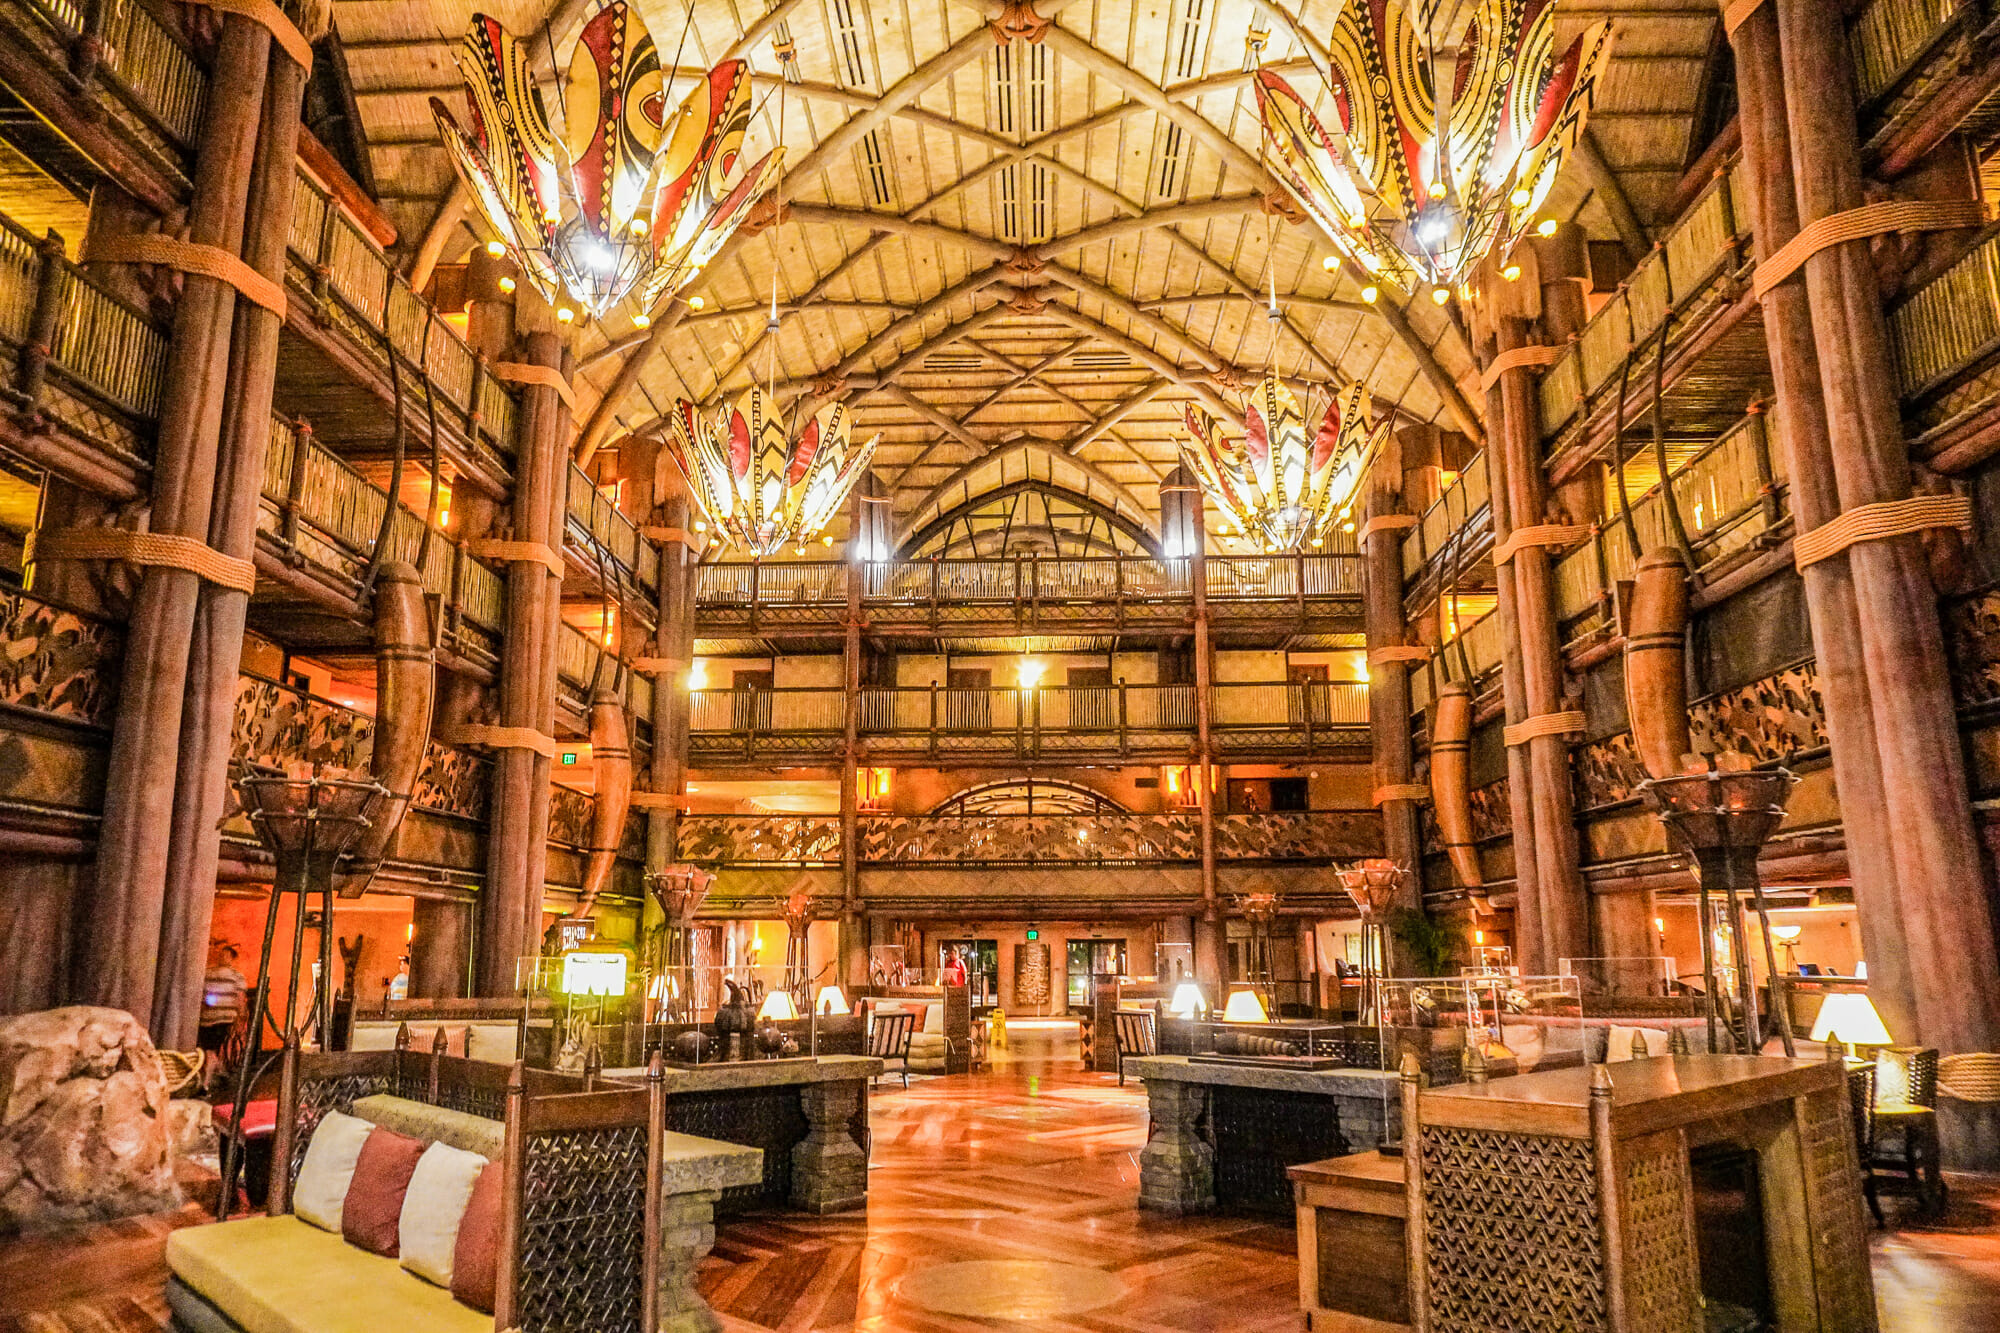 A imagem mostra o lobby do Animal Kingdom Lodge, um dos hotéis de luxo da Disney. A decoração é toda em madeira, com pilares, teto alto e lustres coloridos.